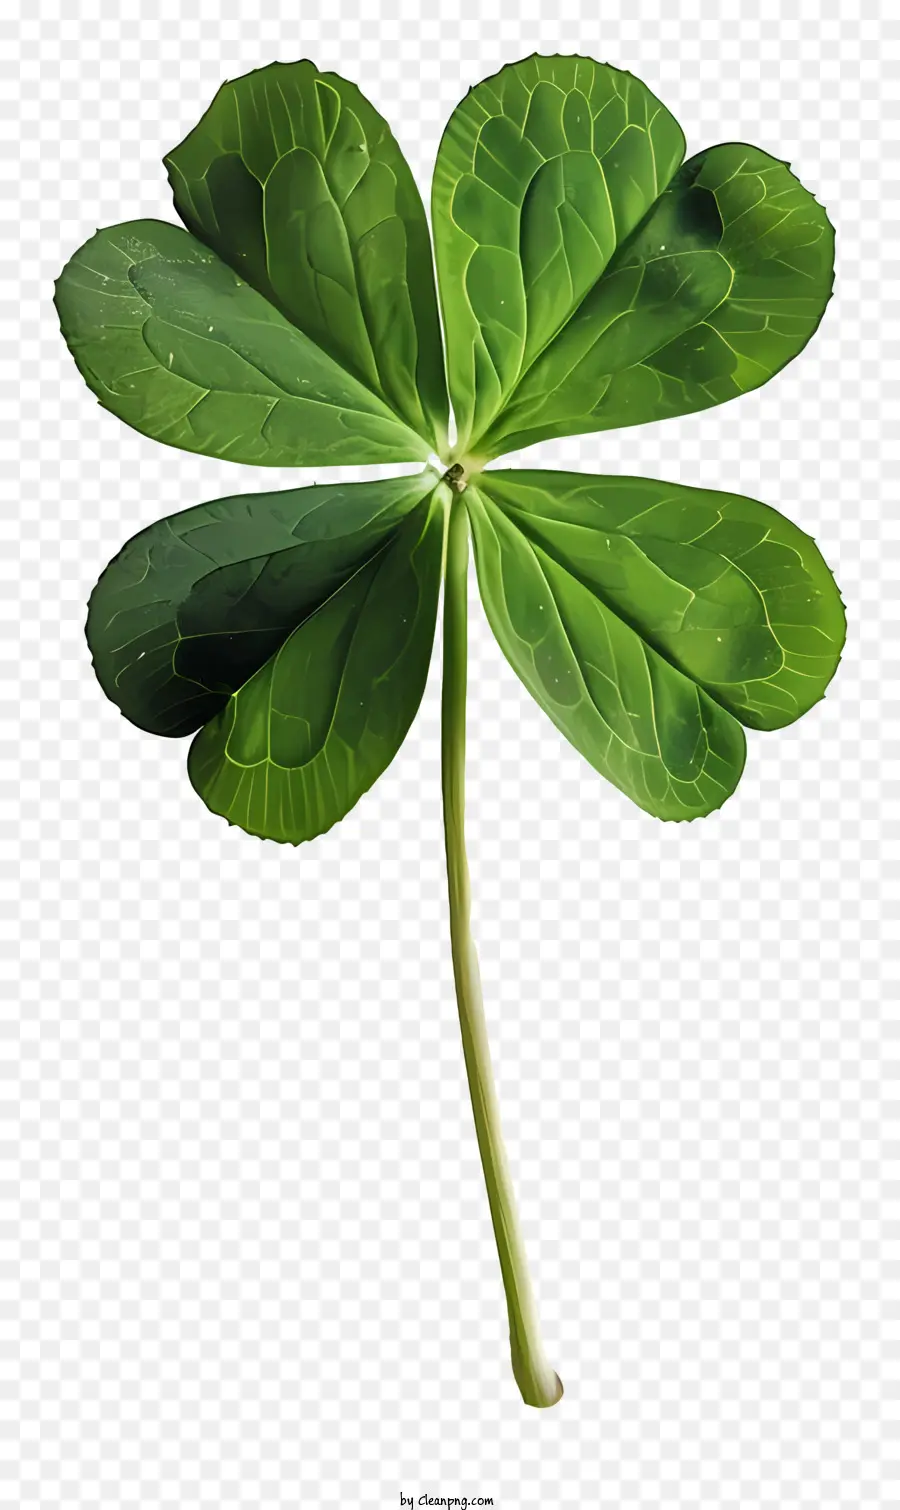 Il Giorno di san Patrizio - Trifoglio a tre foglie verdi su sfondo nero